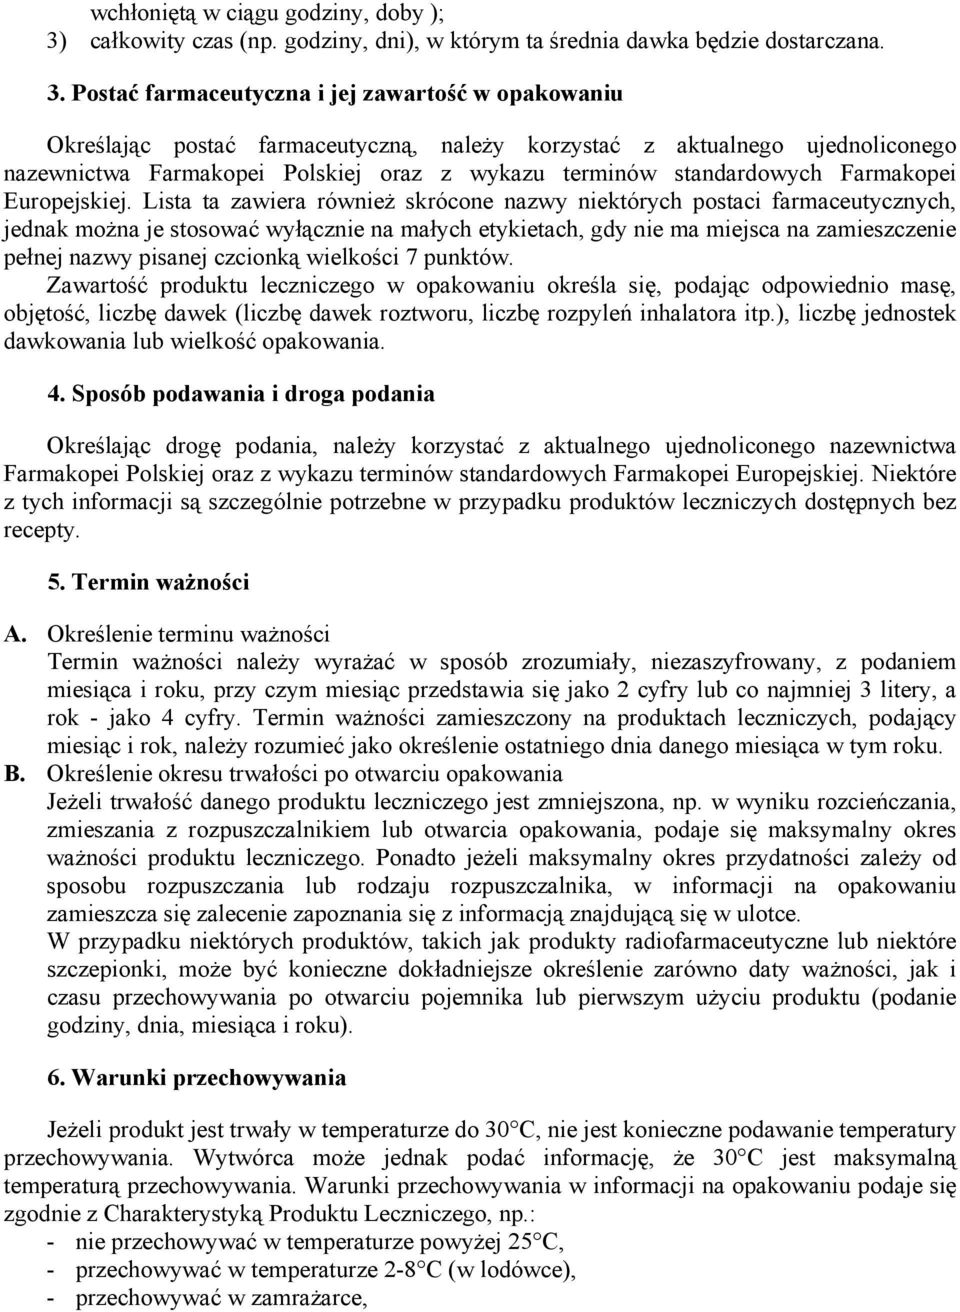 Postać farmaceutyczna i jej zawartość w opakowaniu Określając postać farmaceutyczną, należy korzystać z aktualnego ujednoliconego nazewnictwa Farmakopei Polskiej oraz z wykazu terminów standardowych